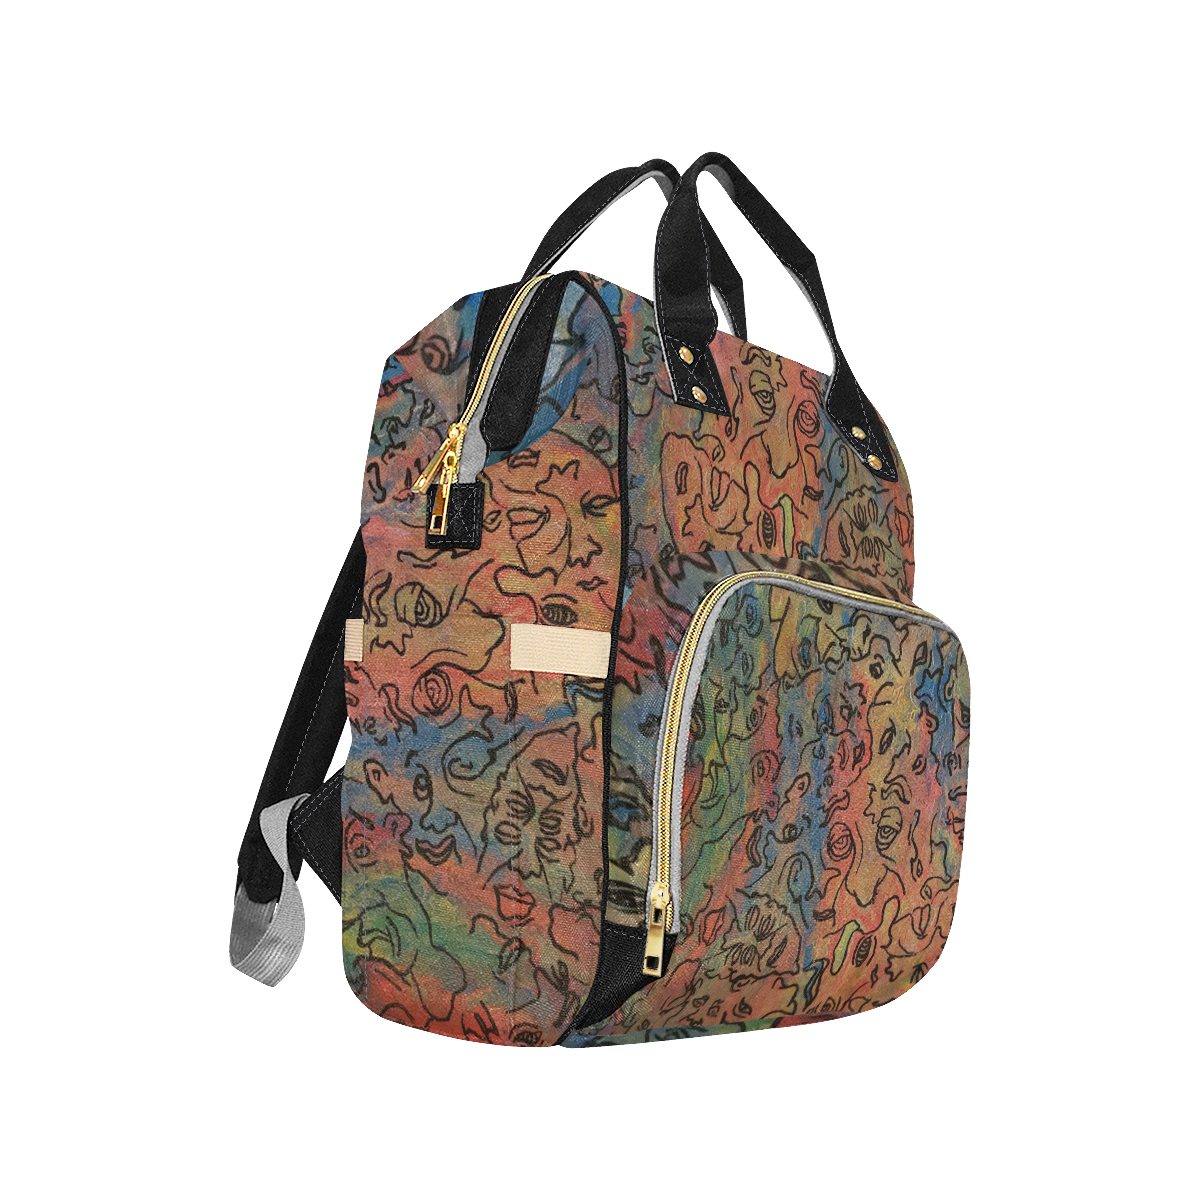 niffy 2 Multi-Function Diaper Backpack/Diaper Bag (Model 1688)